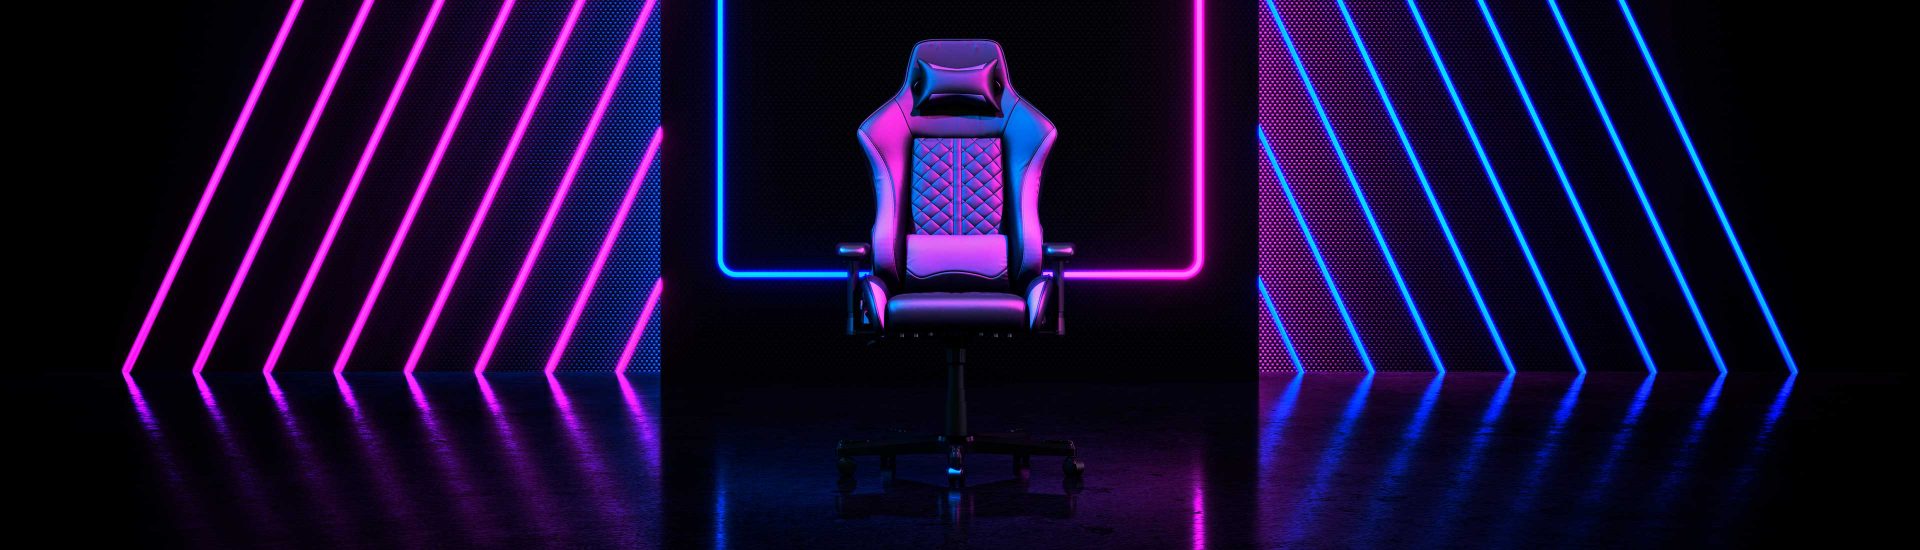 Guía de compra para sillas gaming con LED: características y modelos